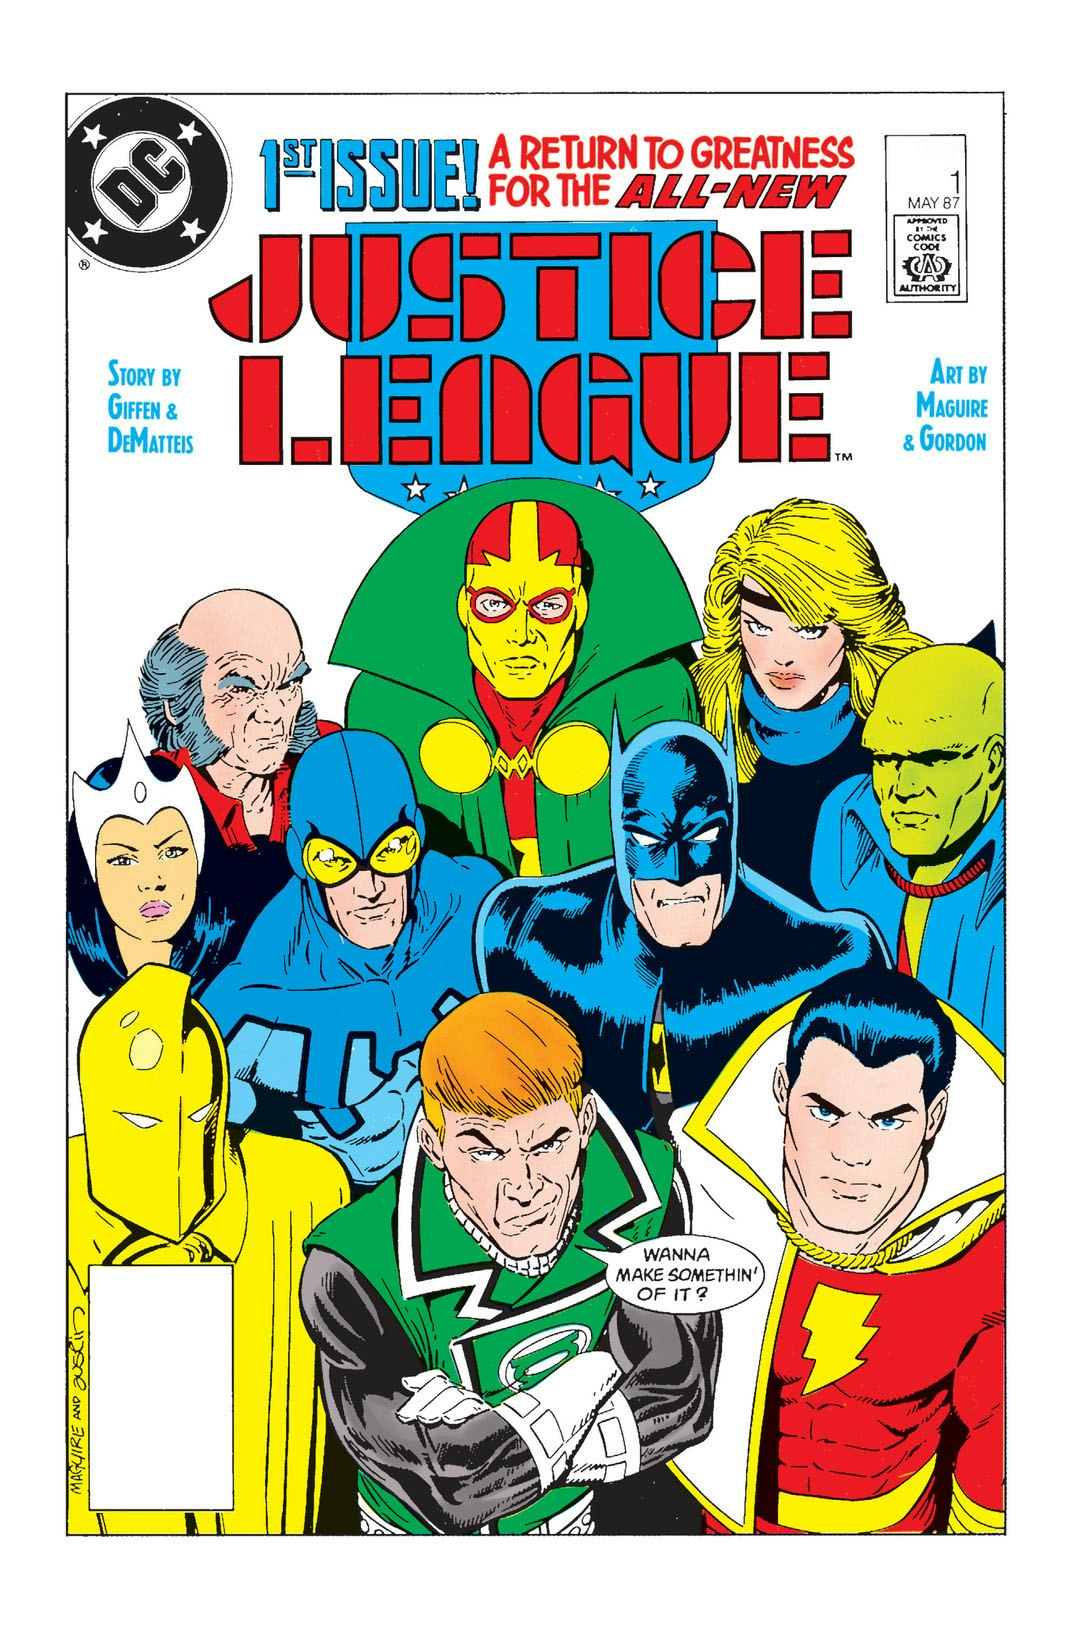 Justice league 1 1987